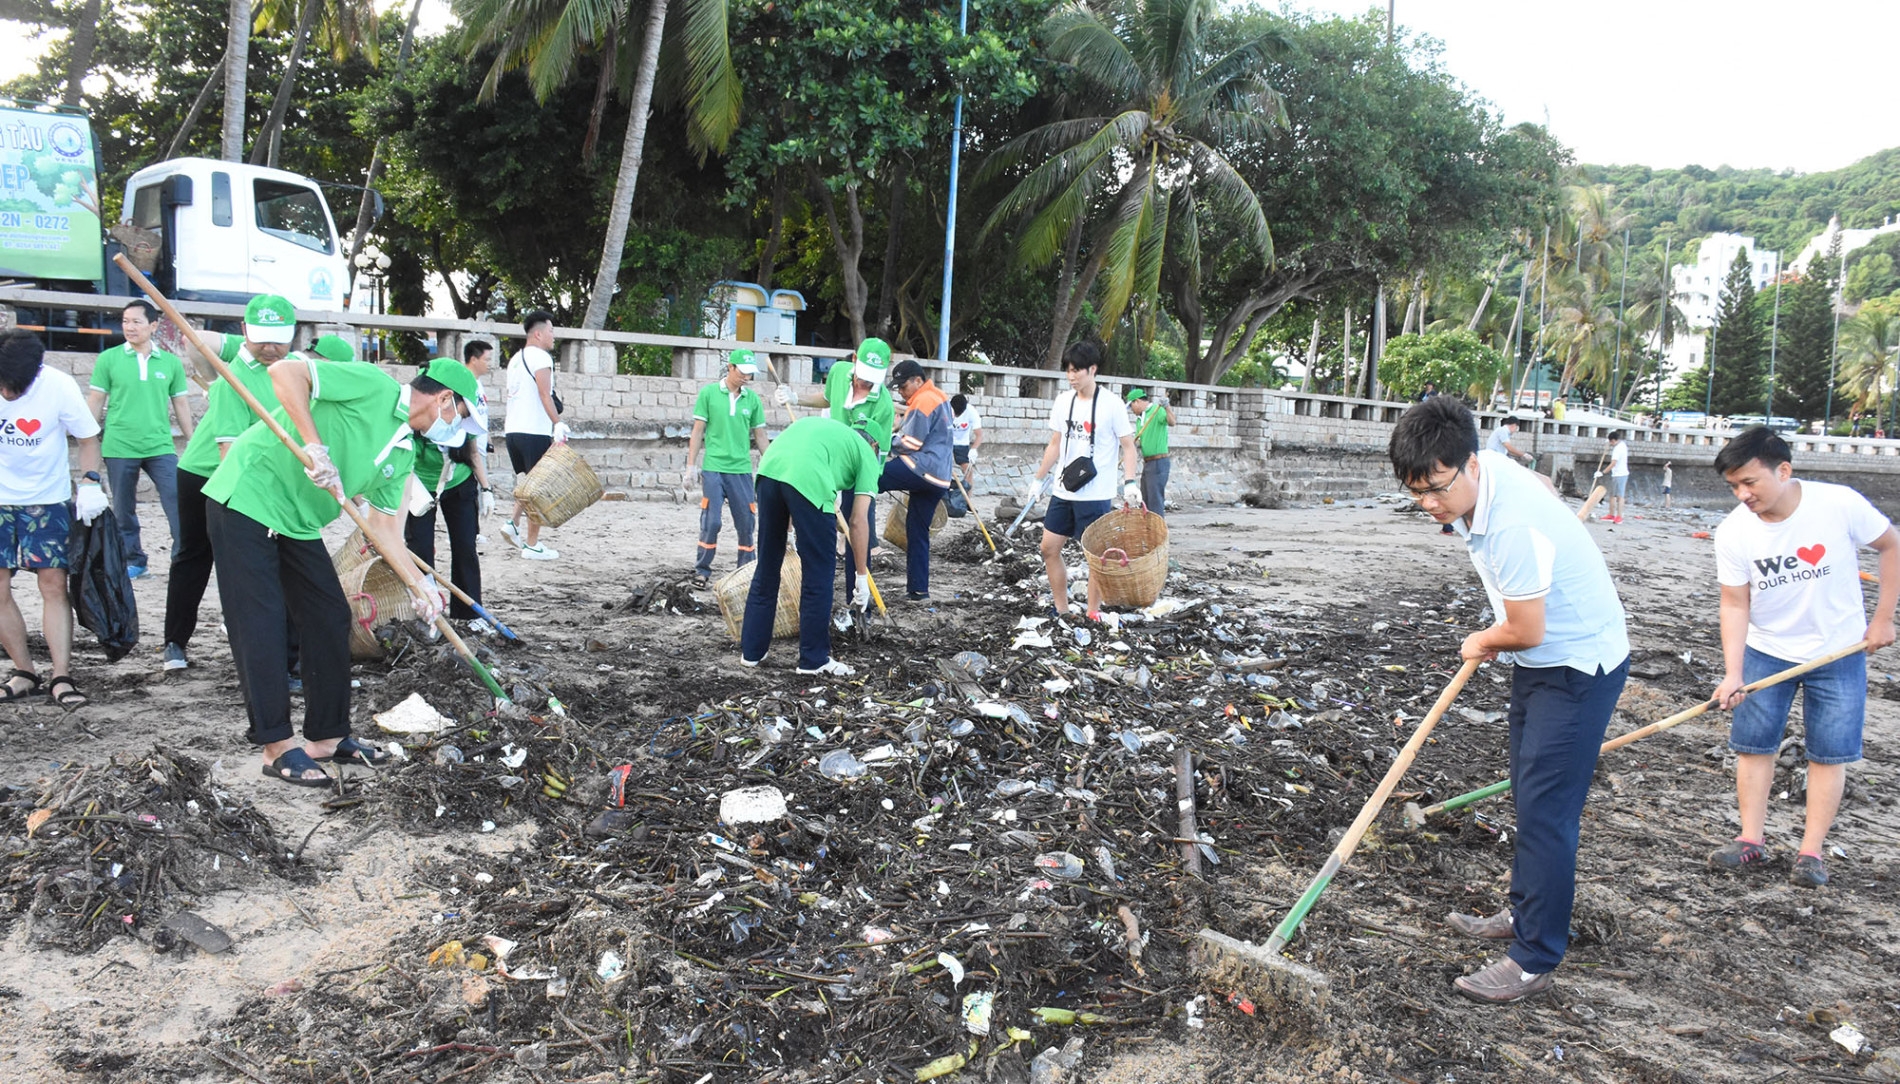 志愿者和游客参与清理海滩垃圾活动。